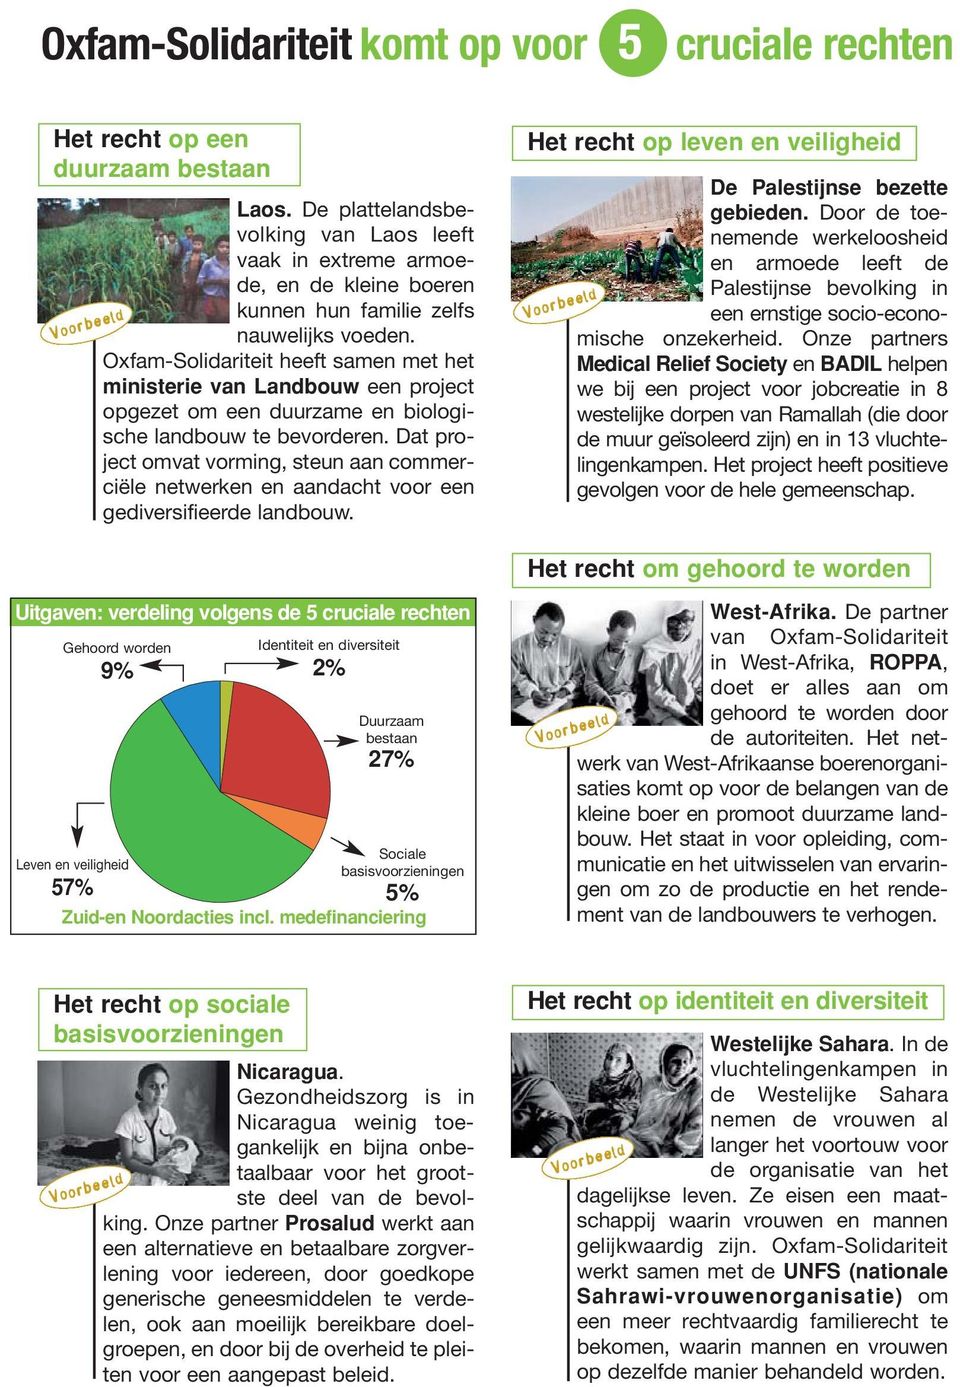 Oxfam-Solidariteit heeft samen met het ministerie van Landbouw een project opgezet om een duurzame en biologische landbouw te bevorderen.